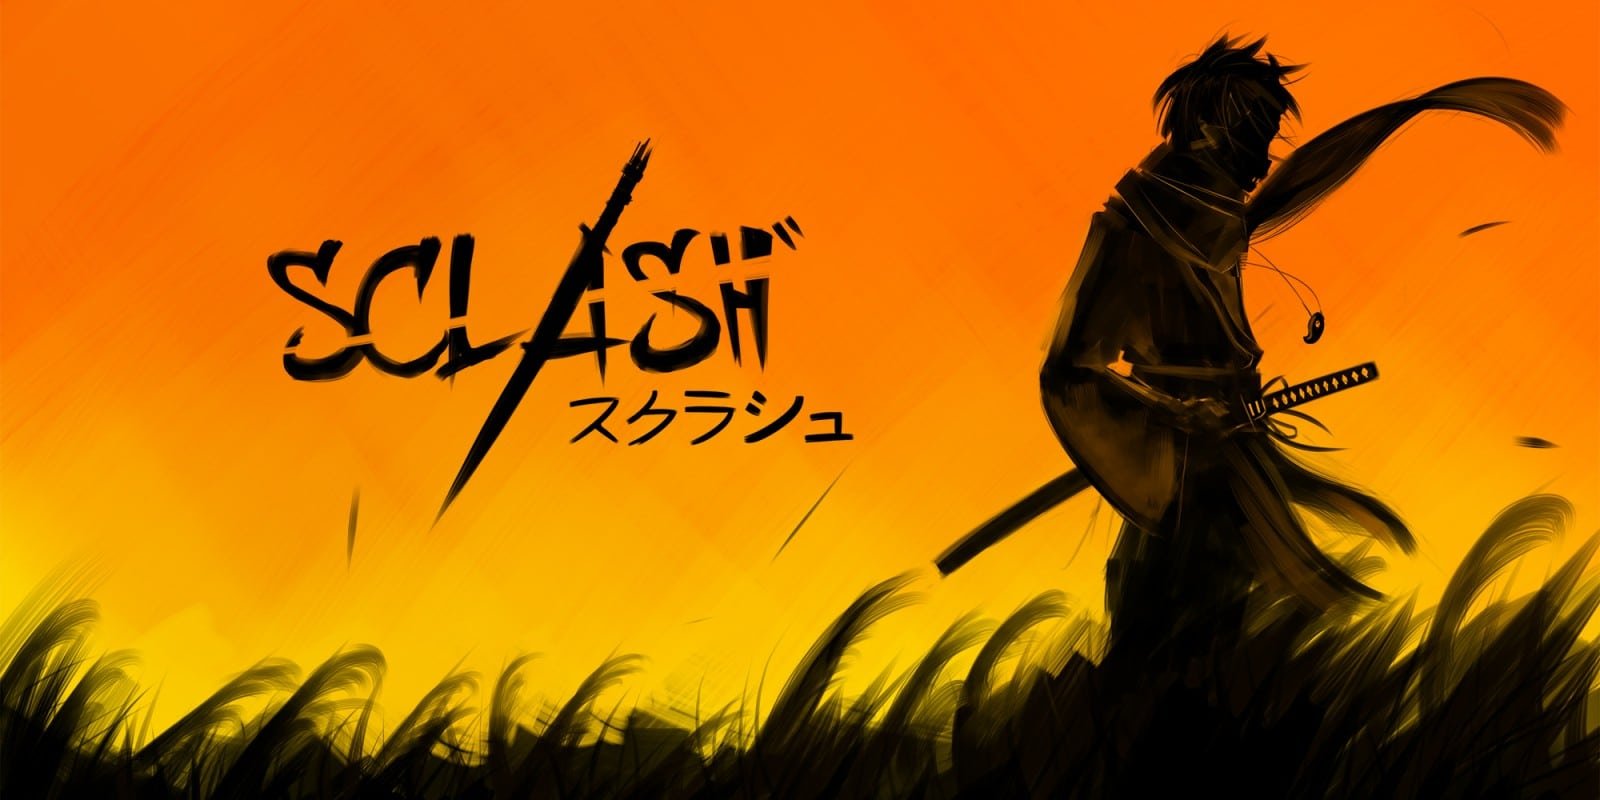 Sclash : le jeu 2D de samouraï sortira sur Nintendo Switch le mois prochain